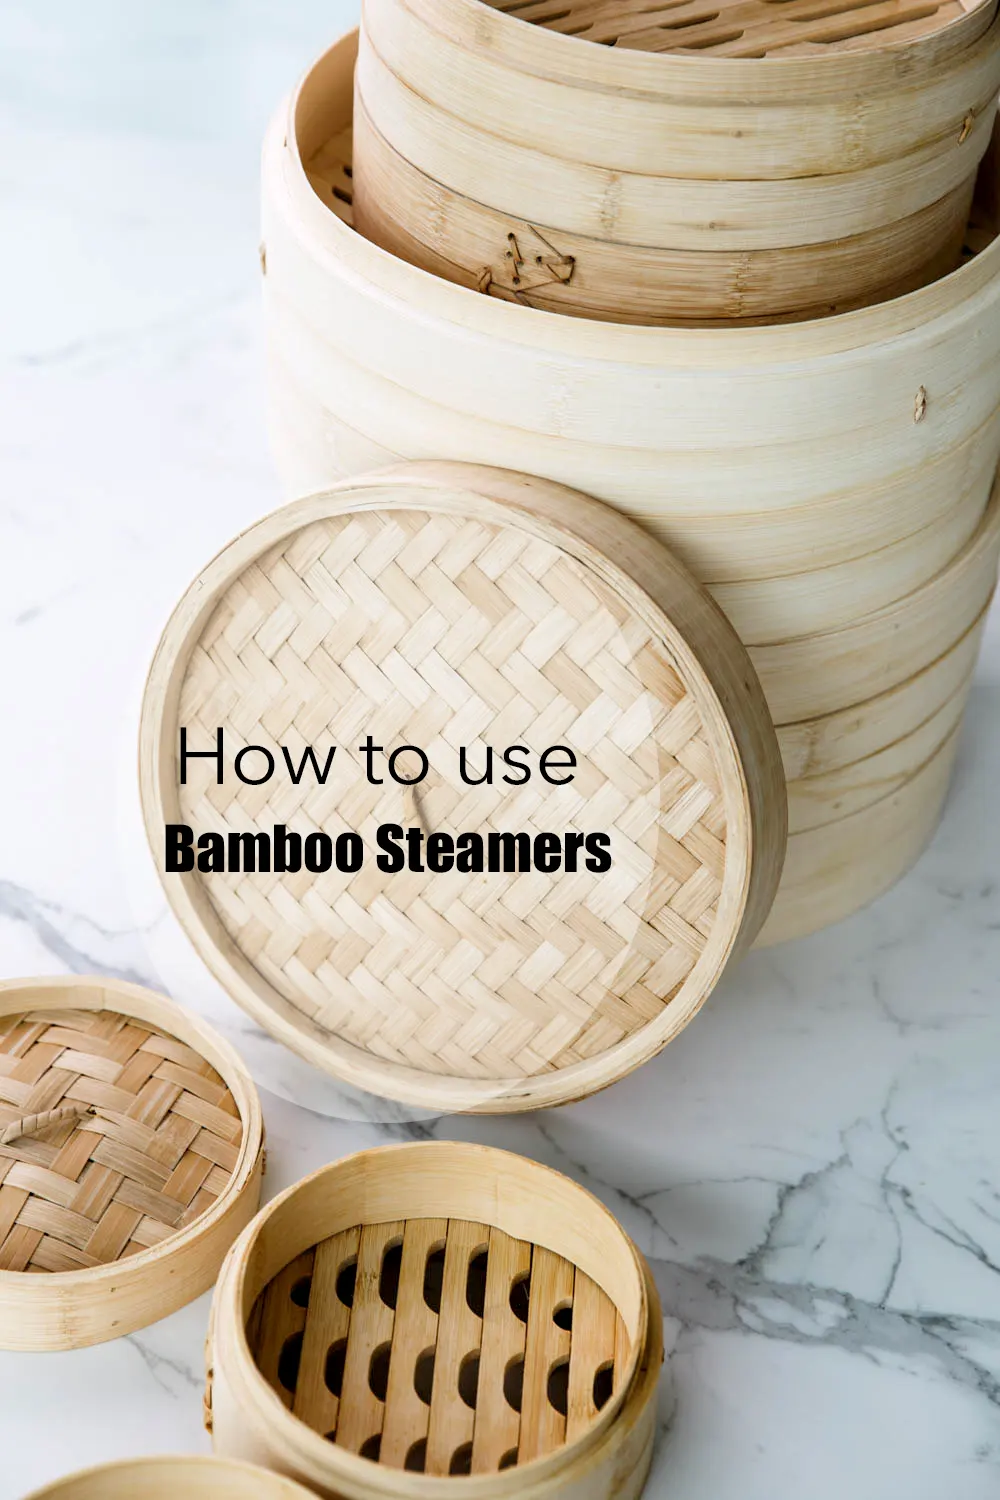 ☆ Panier vapeur en bambou - Recettes asiatiques & Restaurants